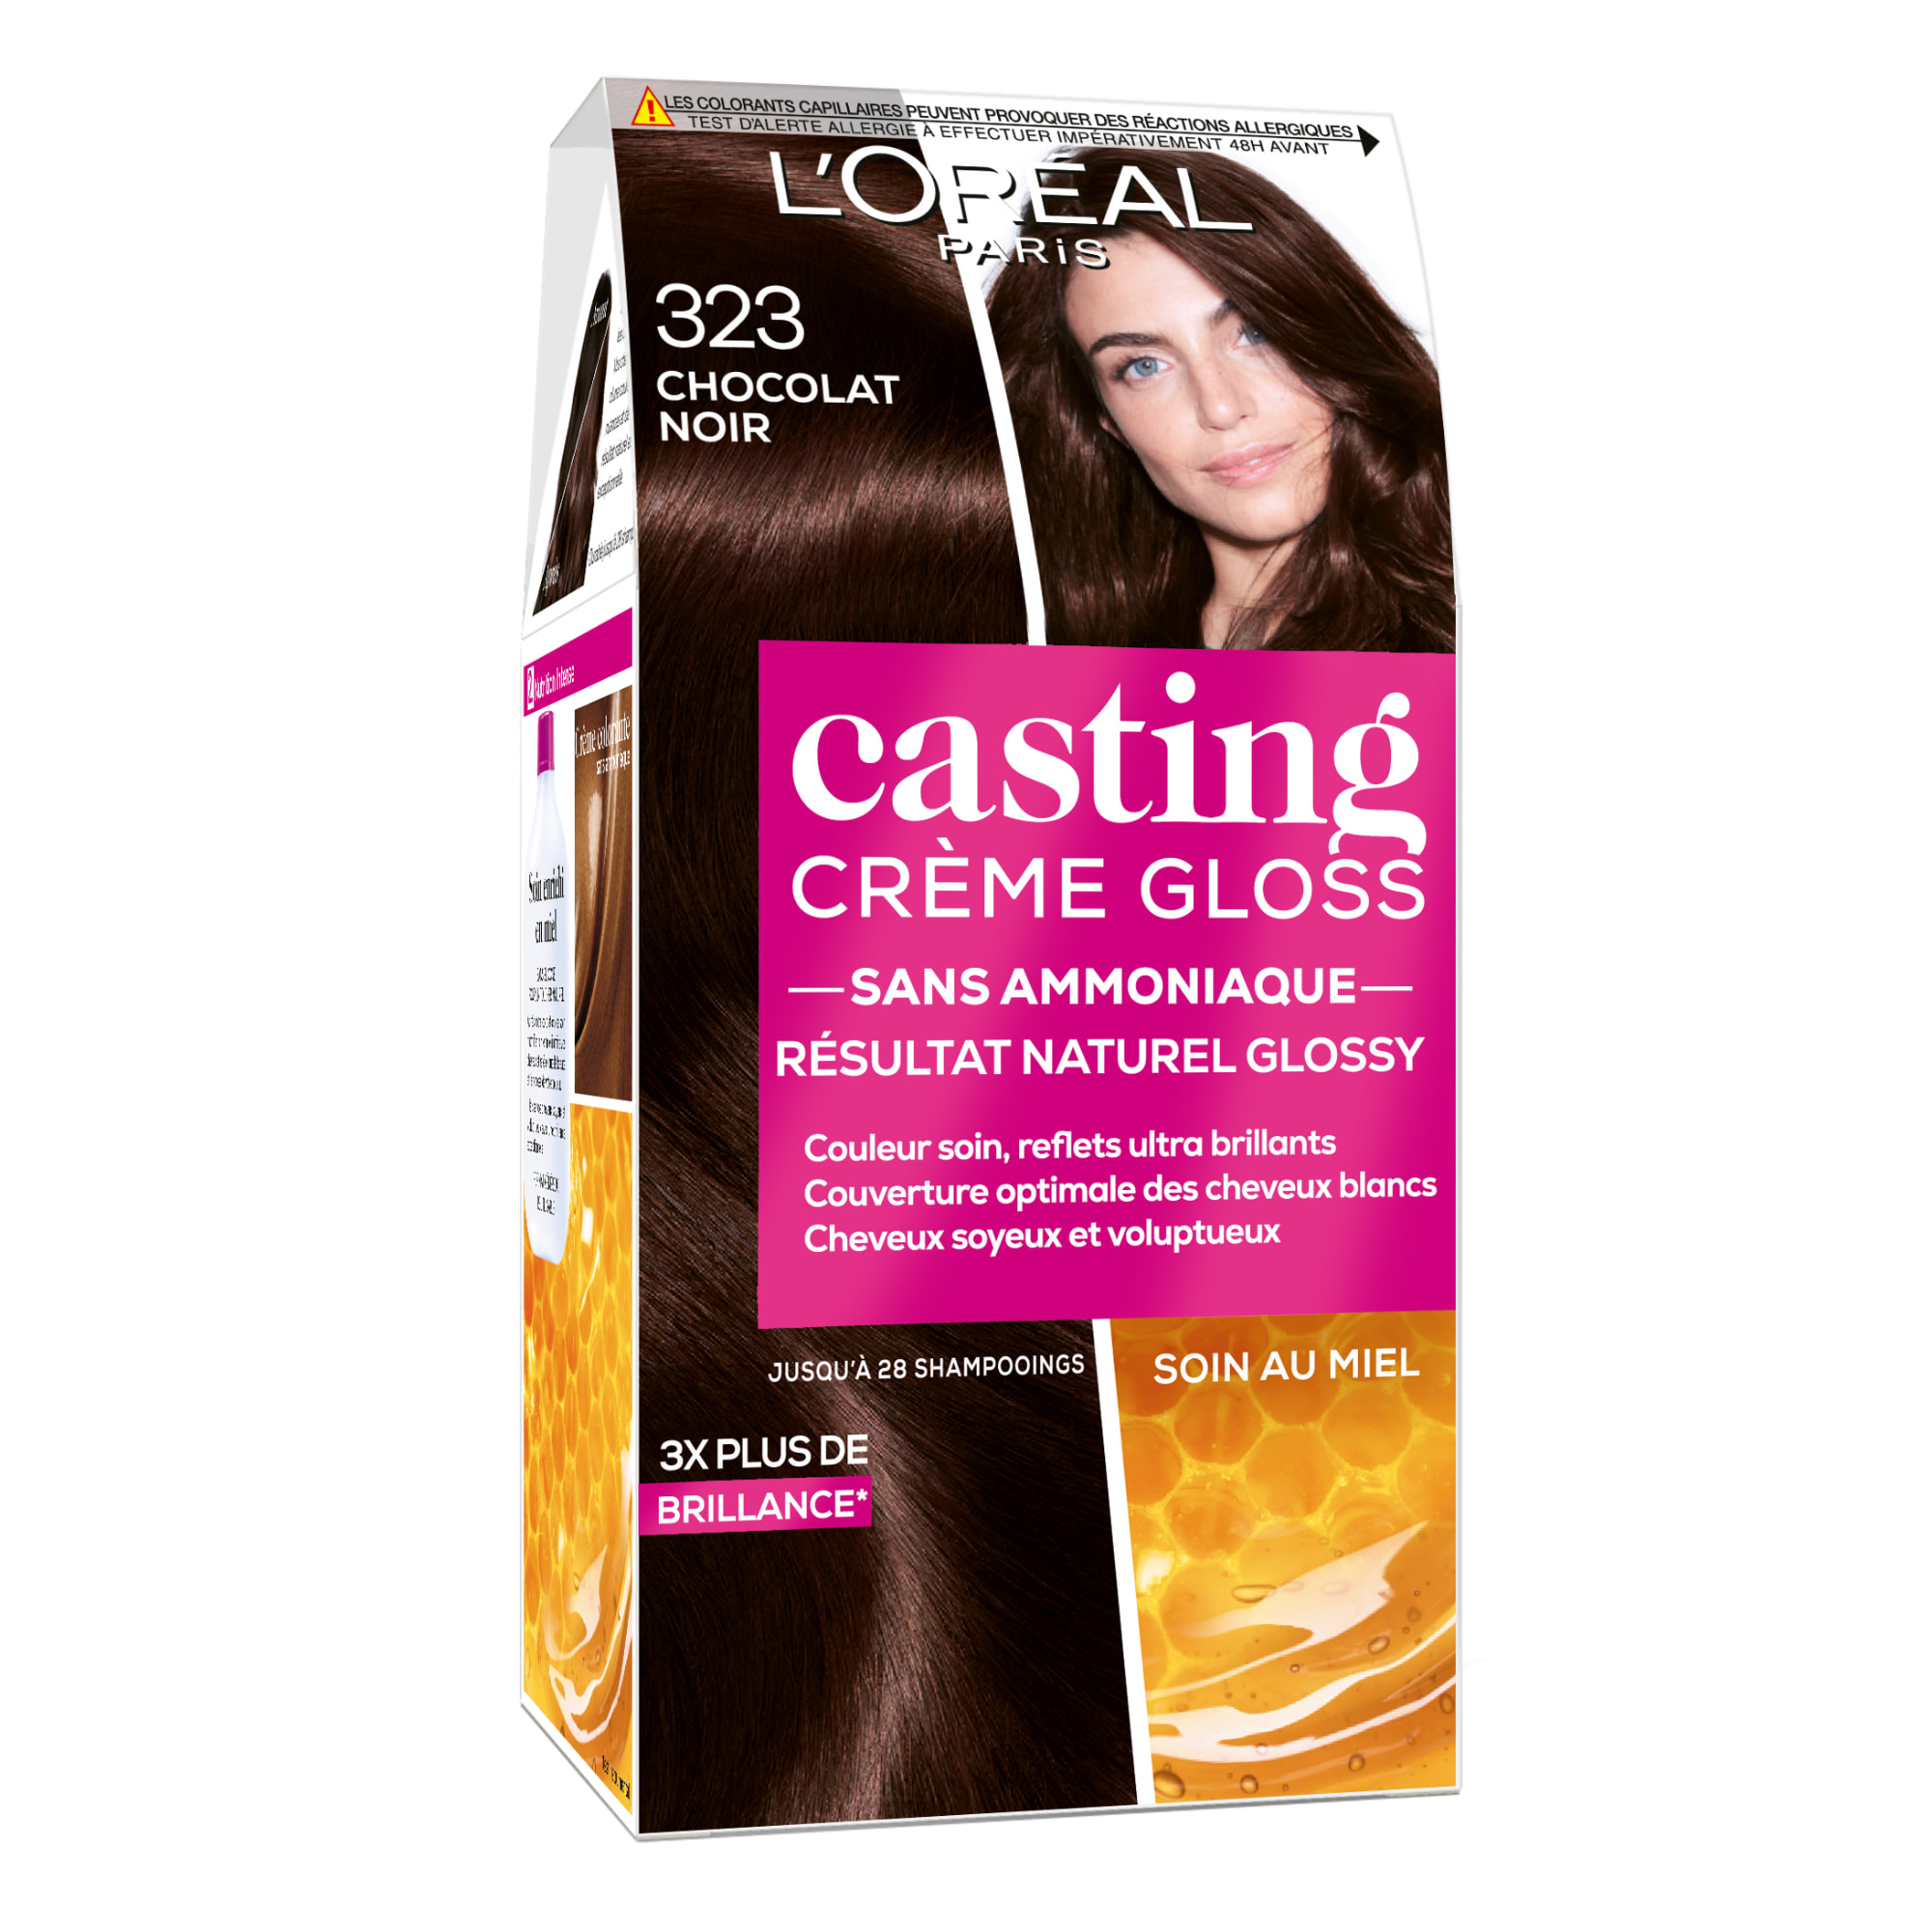 Casting Crème Gloss Noir 23